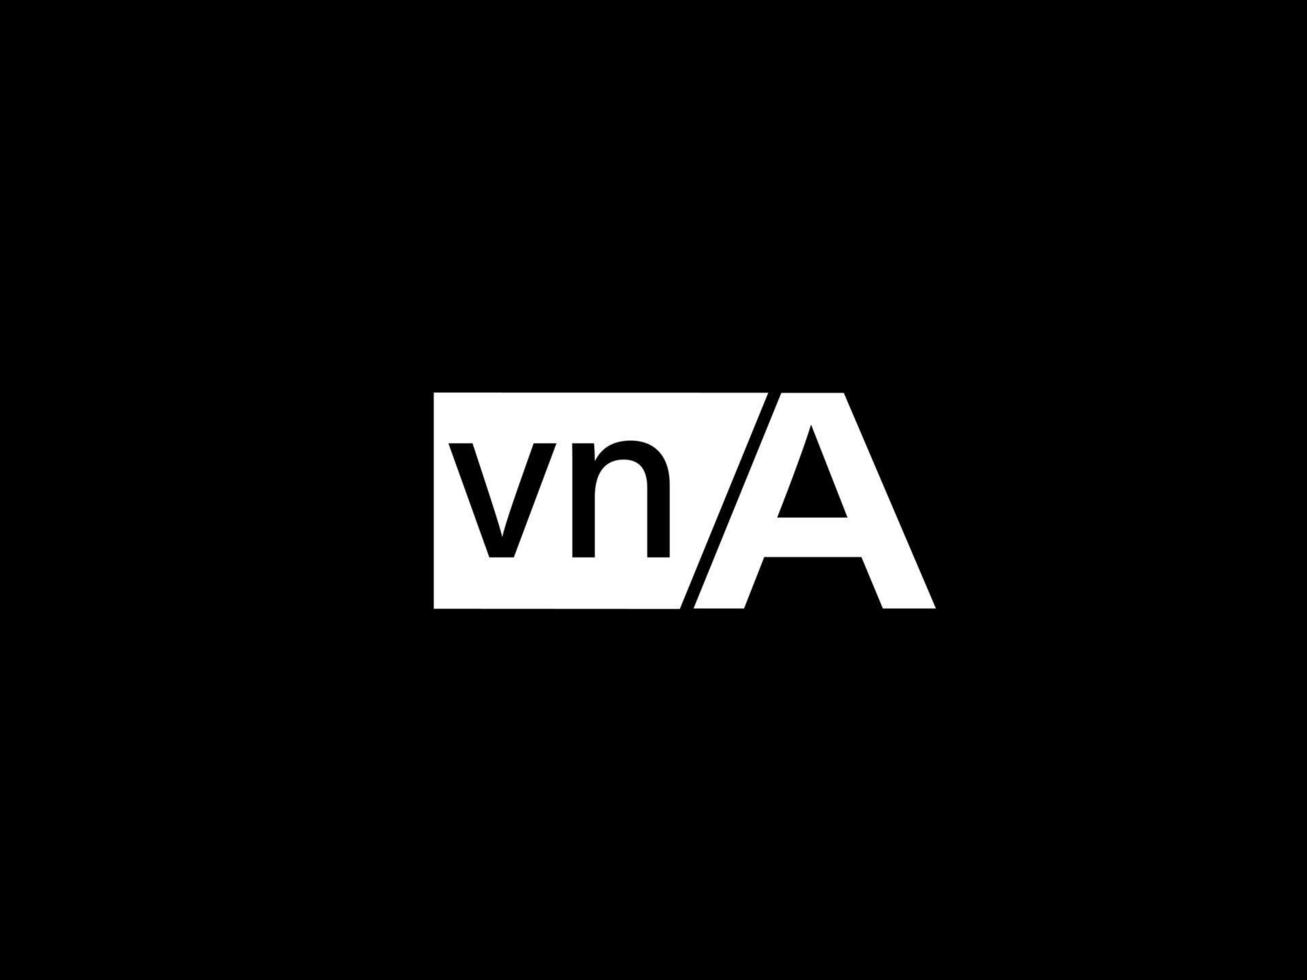 VNA-Logo und Grafikdesign Vektorgrafiken, Symbole isoliert auf schwarzem Hintergrund vektor